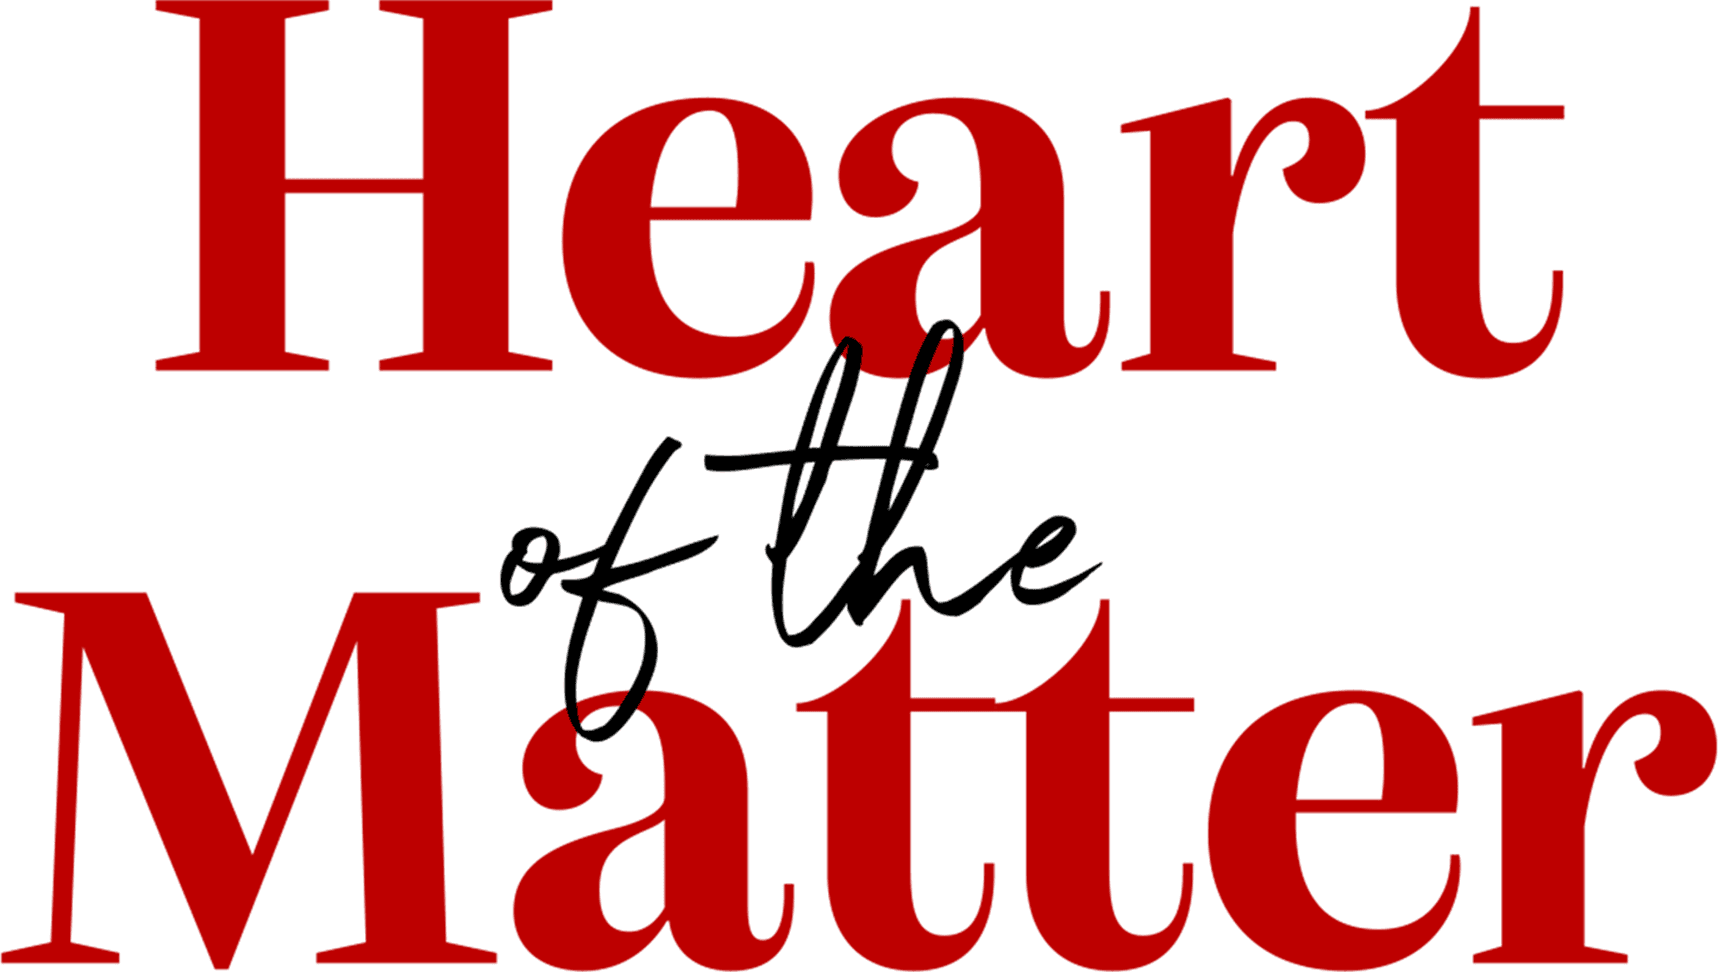 Heart of the Matter logo